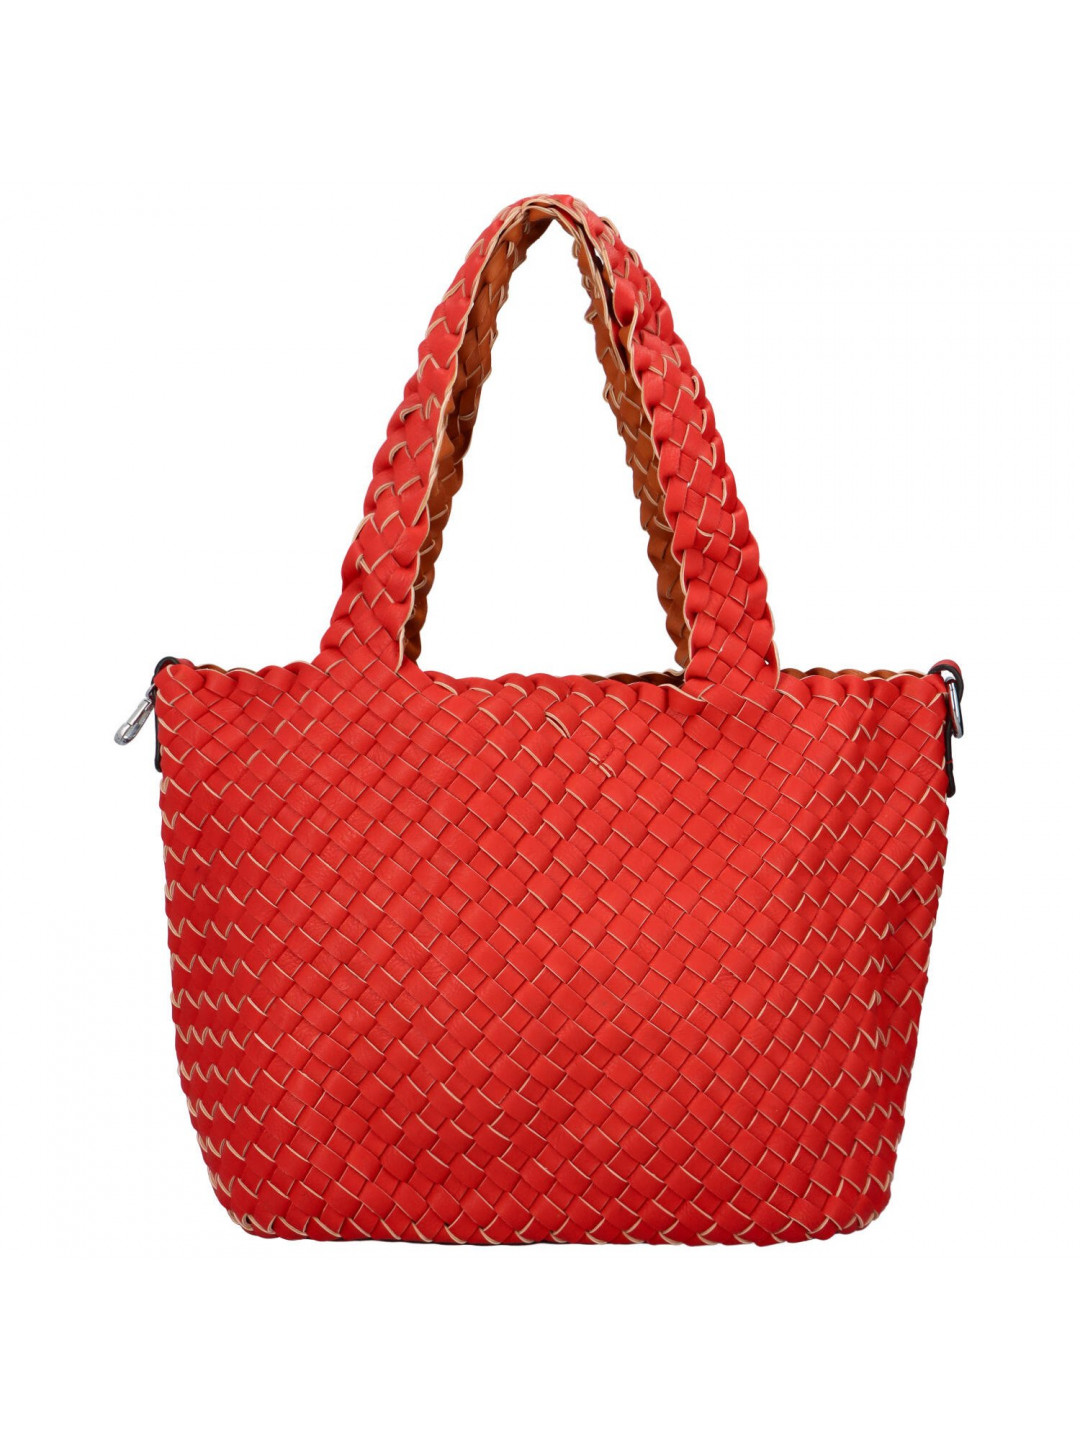 Dámská kabelka přes rameno červená – Paolo bags Ukina